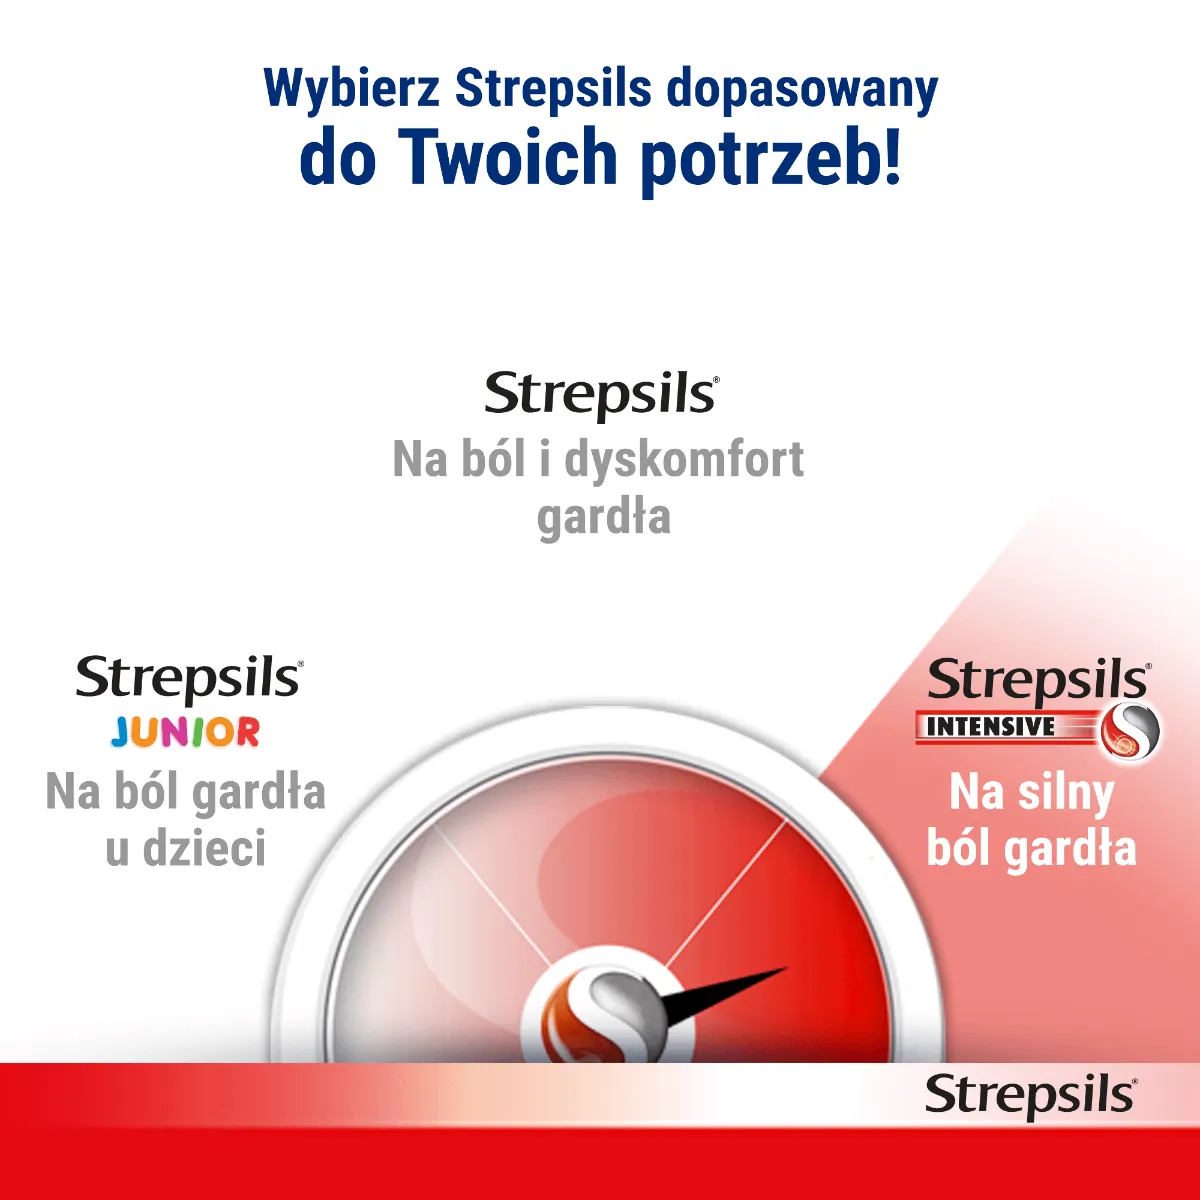 Strepsils Intensive Direct, 8,75 mg/dawkę, aerozol do stosowania w jamie ustnej, roztwór, 15 ml 